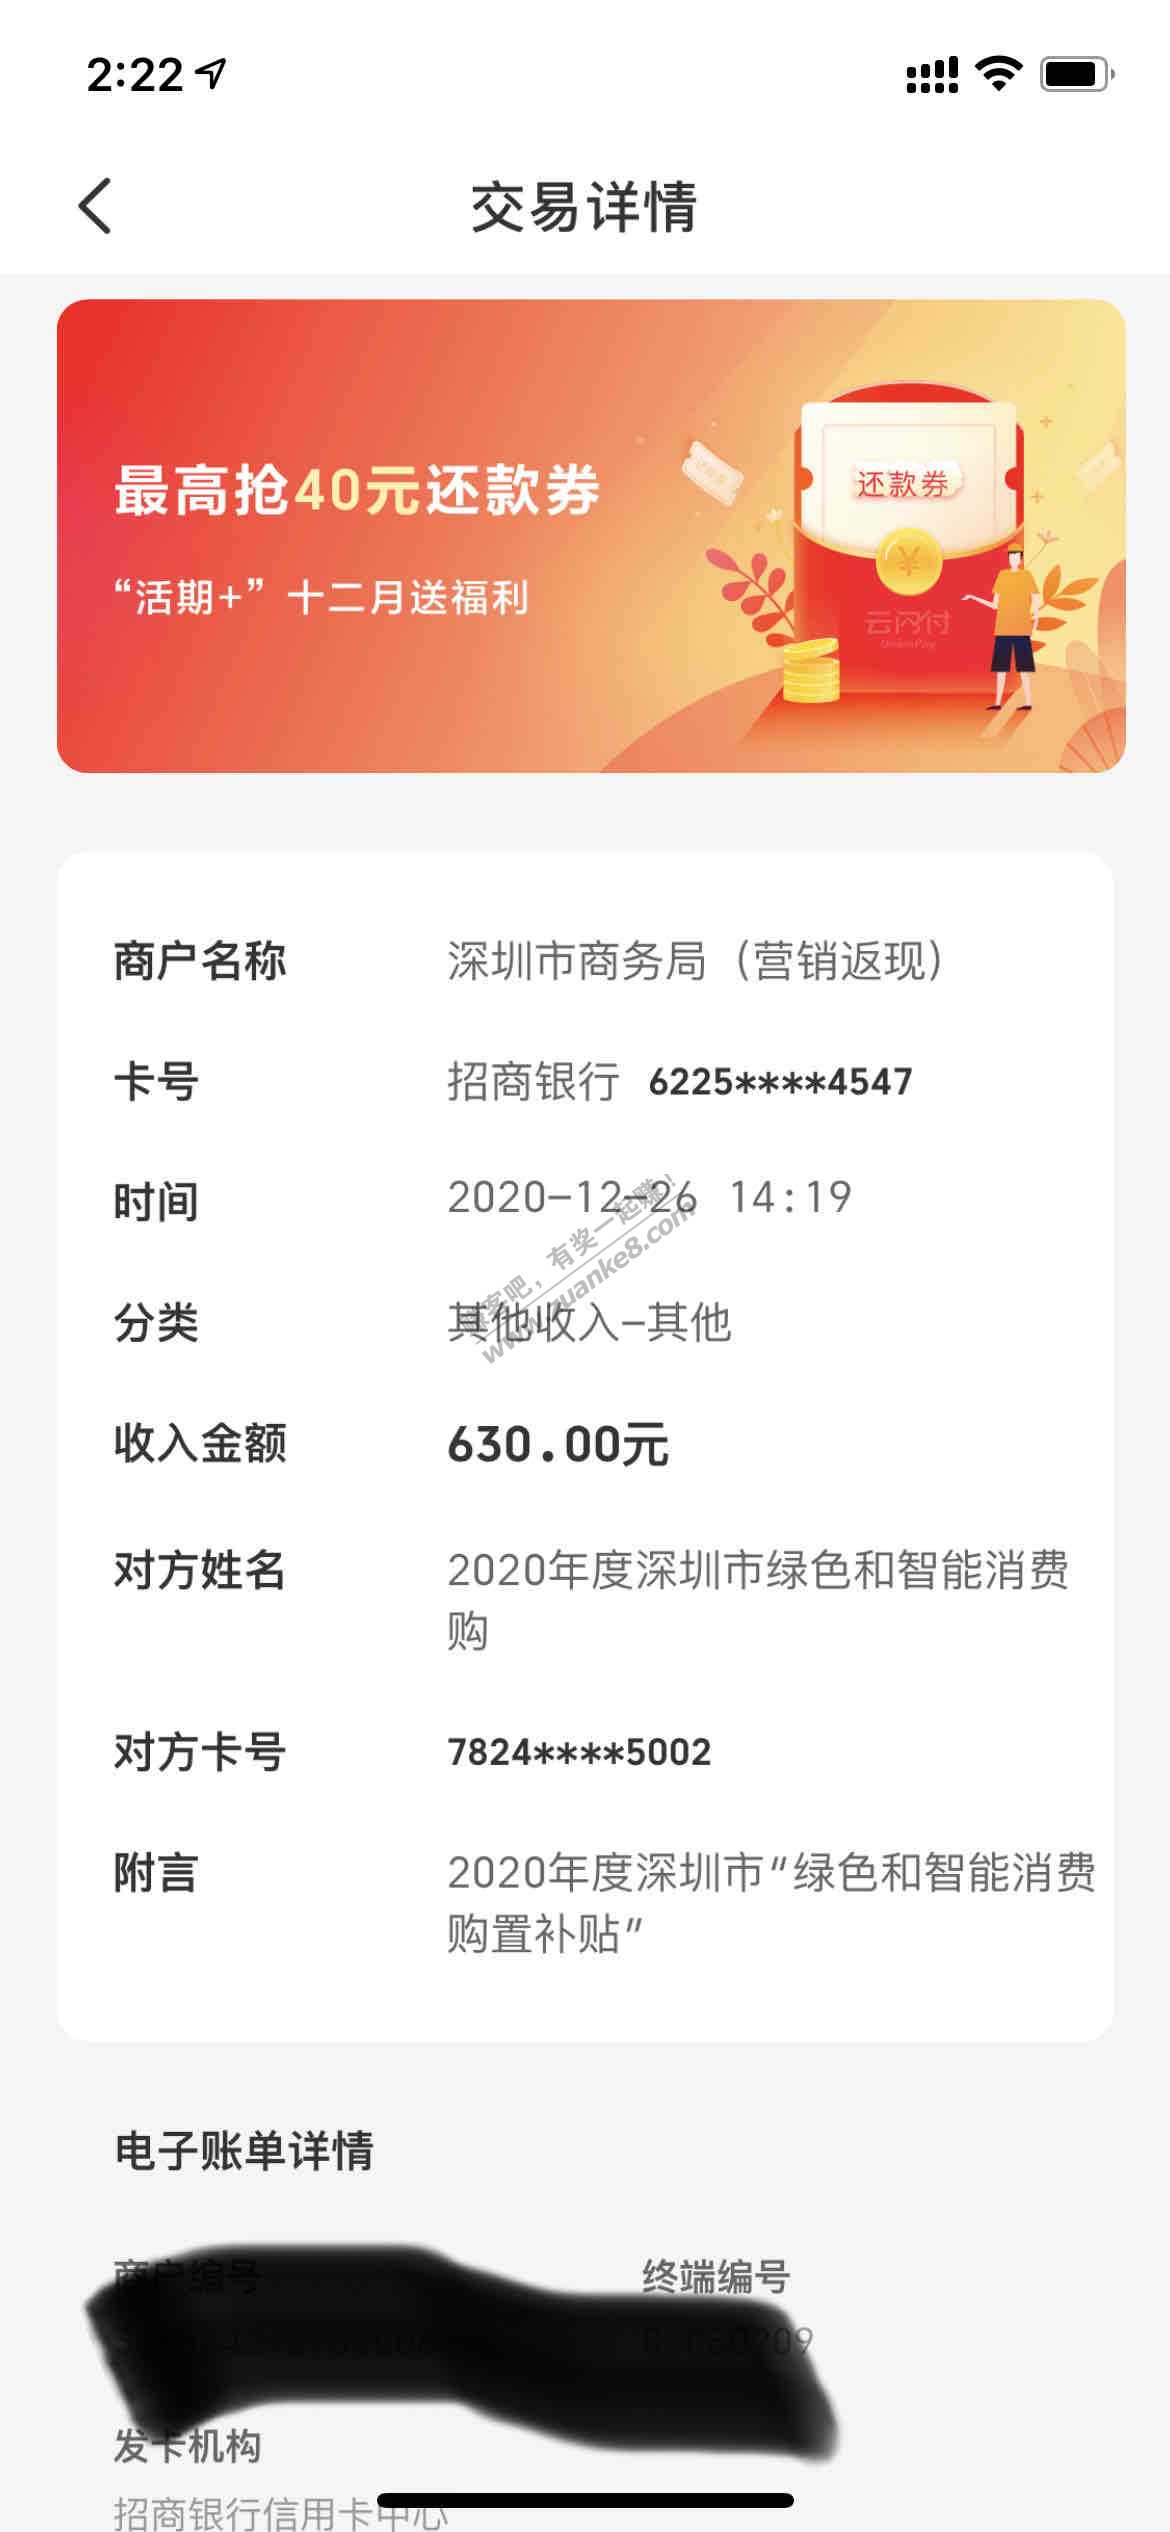 水——苏宁深圳10%补贴到账了-惠小助(52huixz.com)